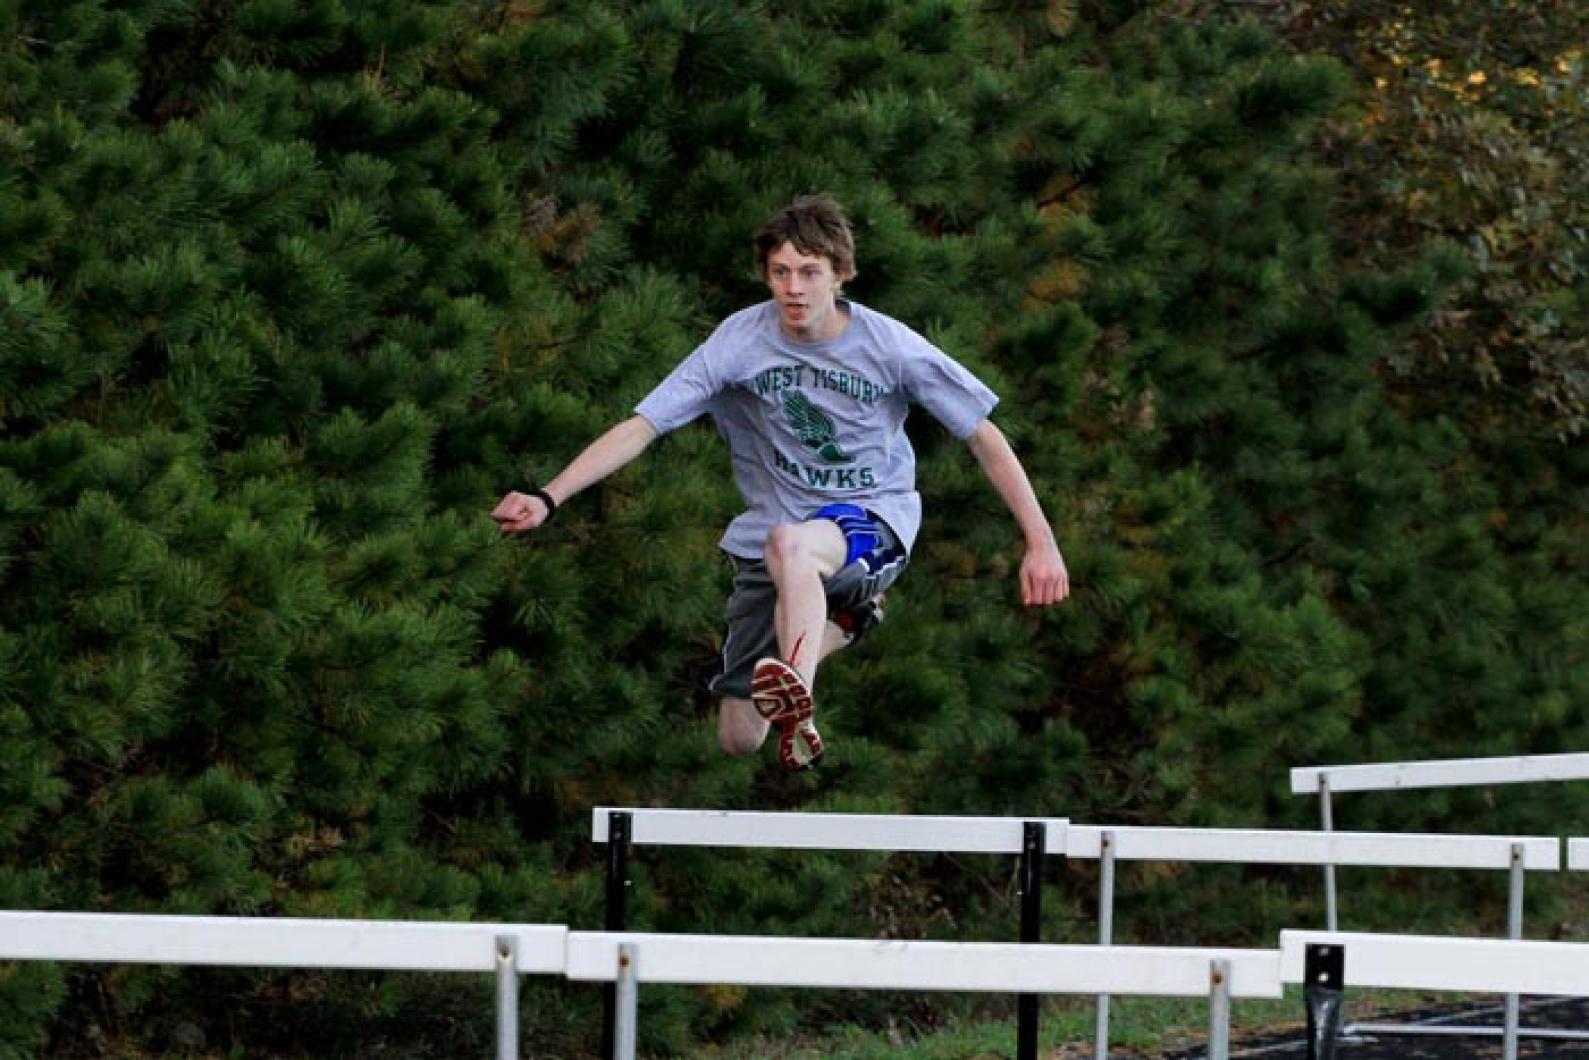 Chase Sylvia jumping hurdles